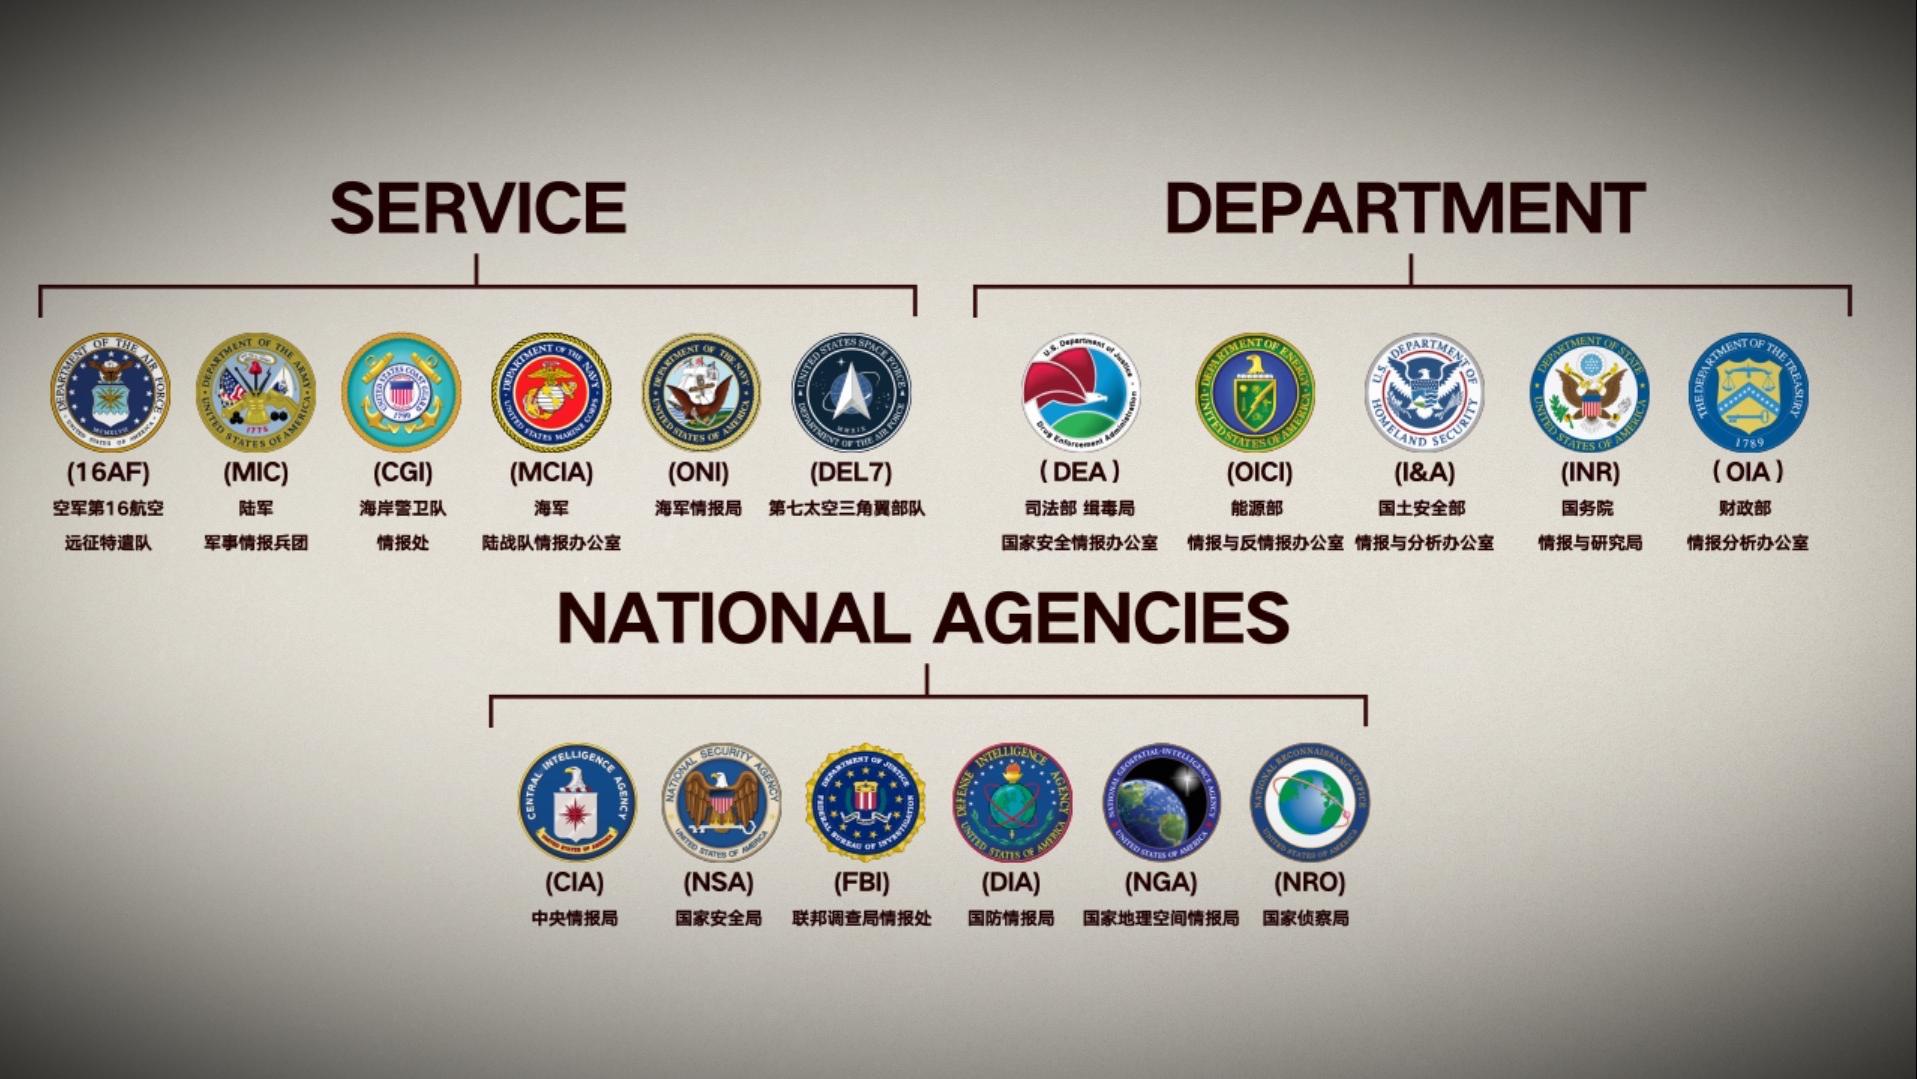 情报总监办公室(美国的最高情报部门,负责统领17个情报机构和单位)